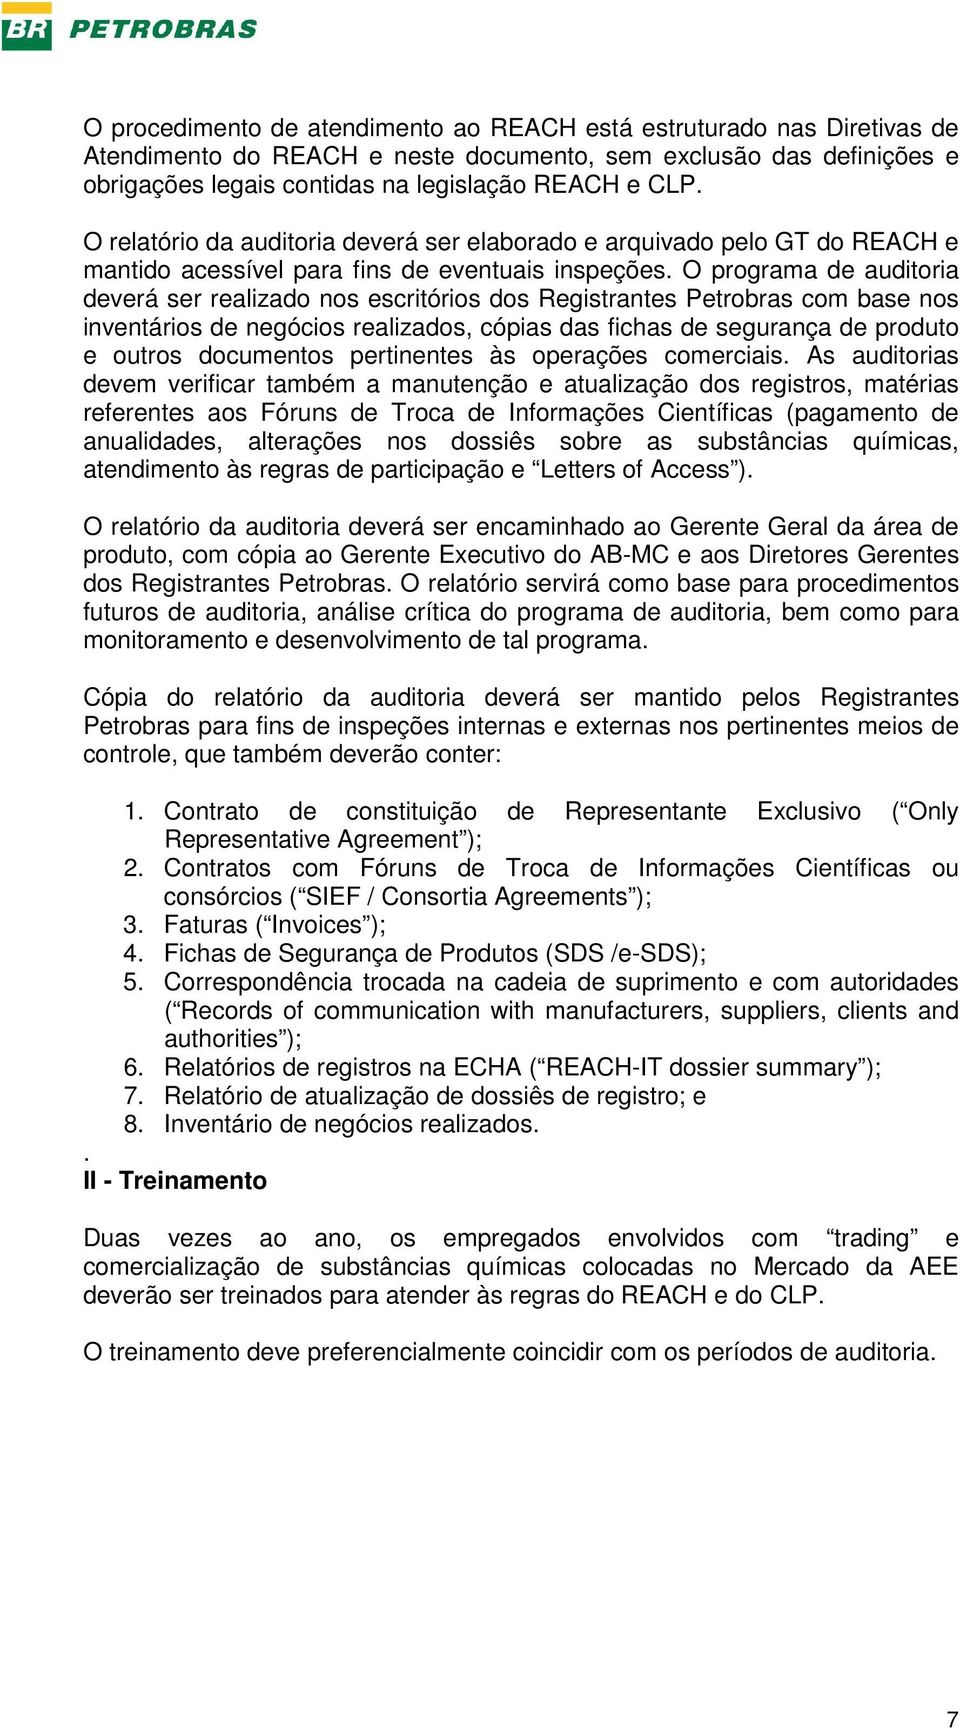 O programa de auditoria deverá ser realizado nos escritórios dos Registrantes Petrobras com base nos inventários de negócios realizados, cópias das fichas de segurança de produto e outros documentos